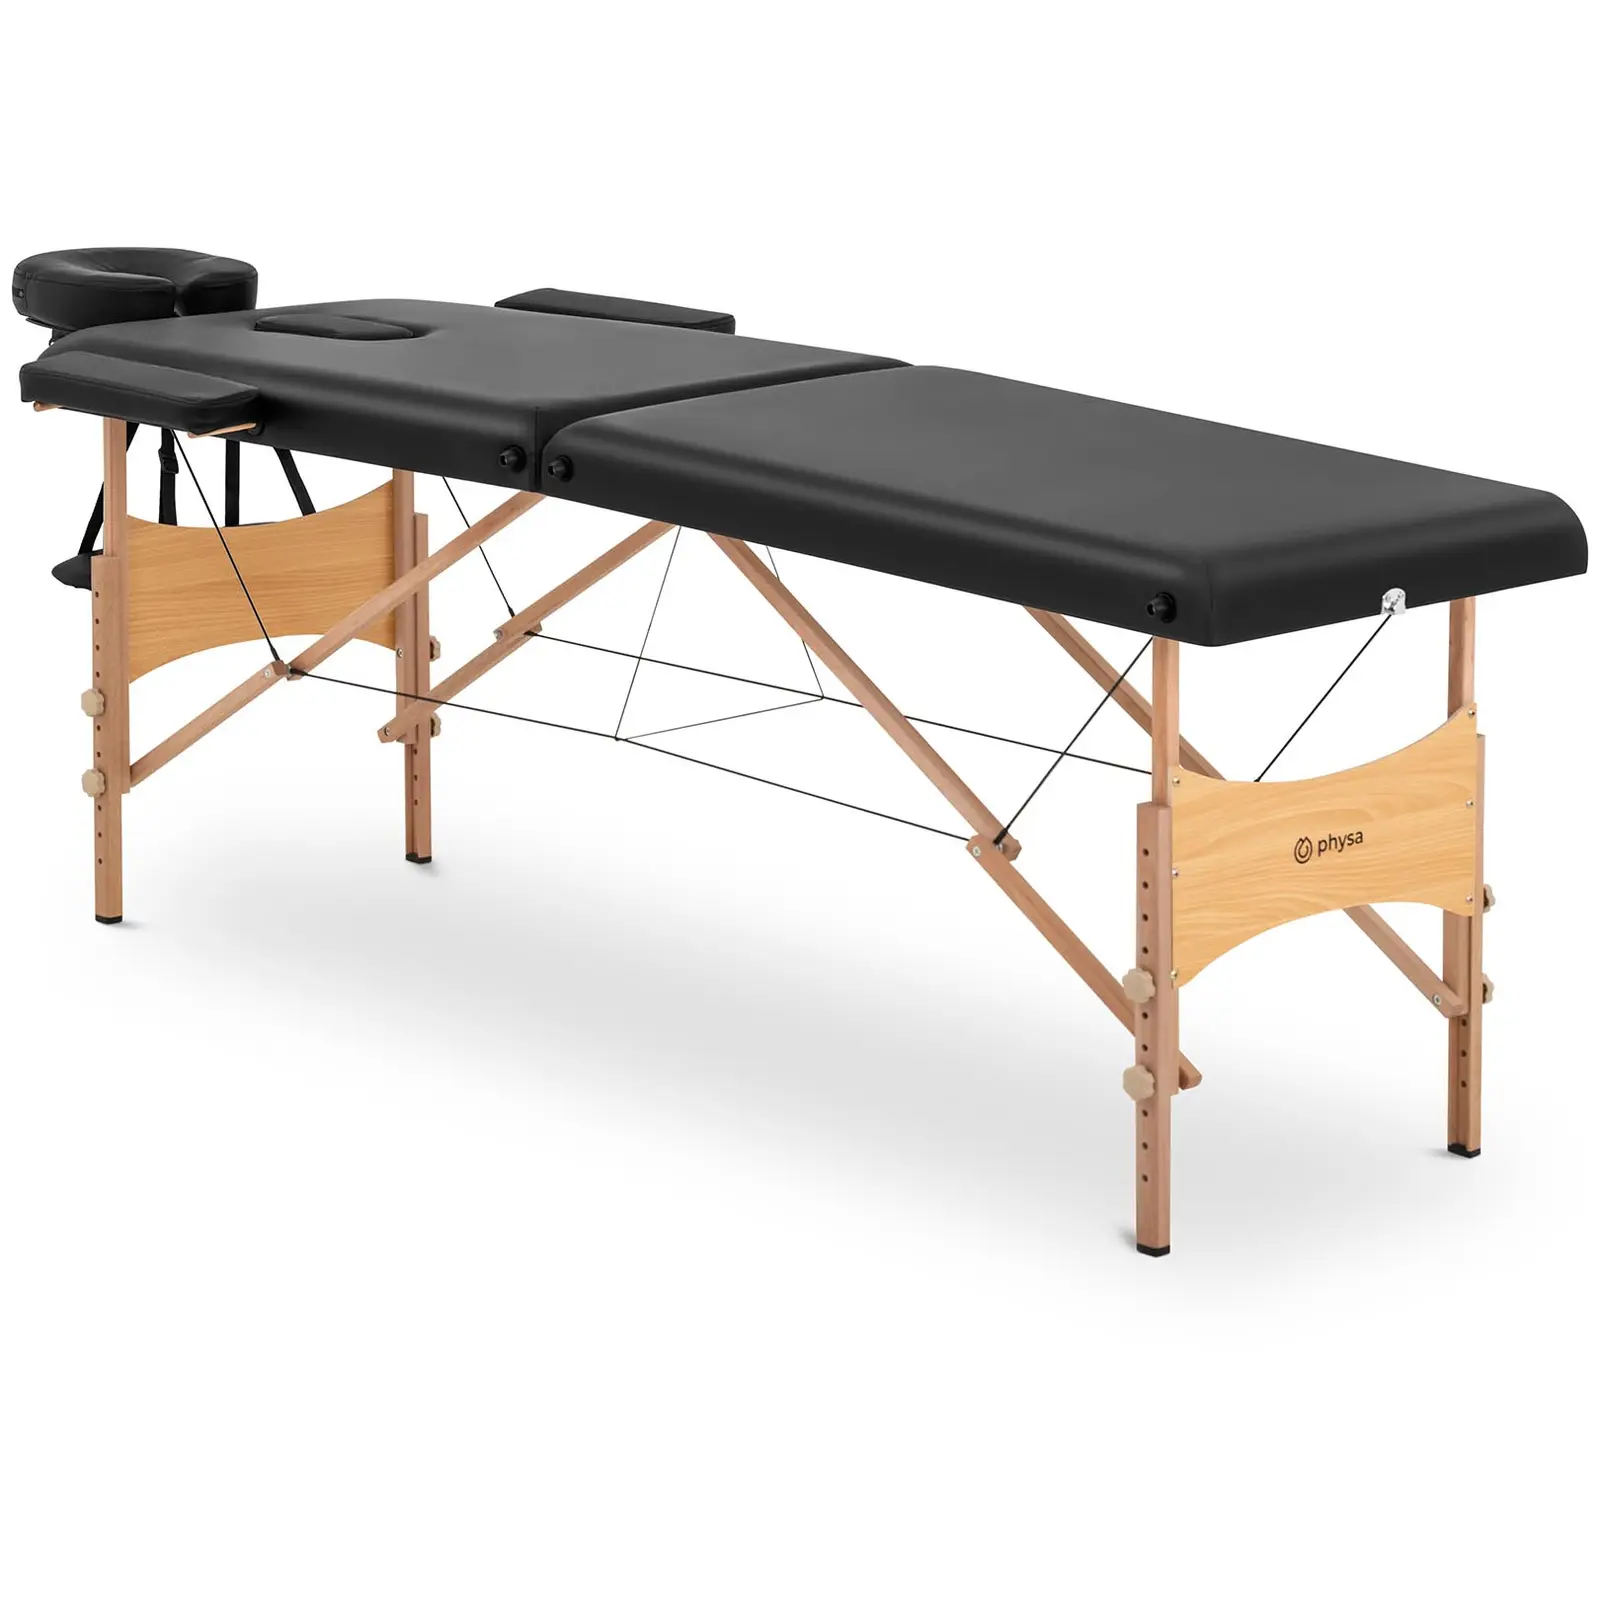 Sulankstomas masažo stalas - 185 x 60 x 62 cm - 227 kg - juodas